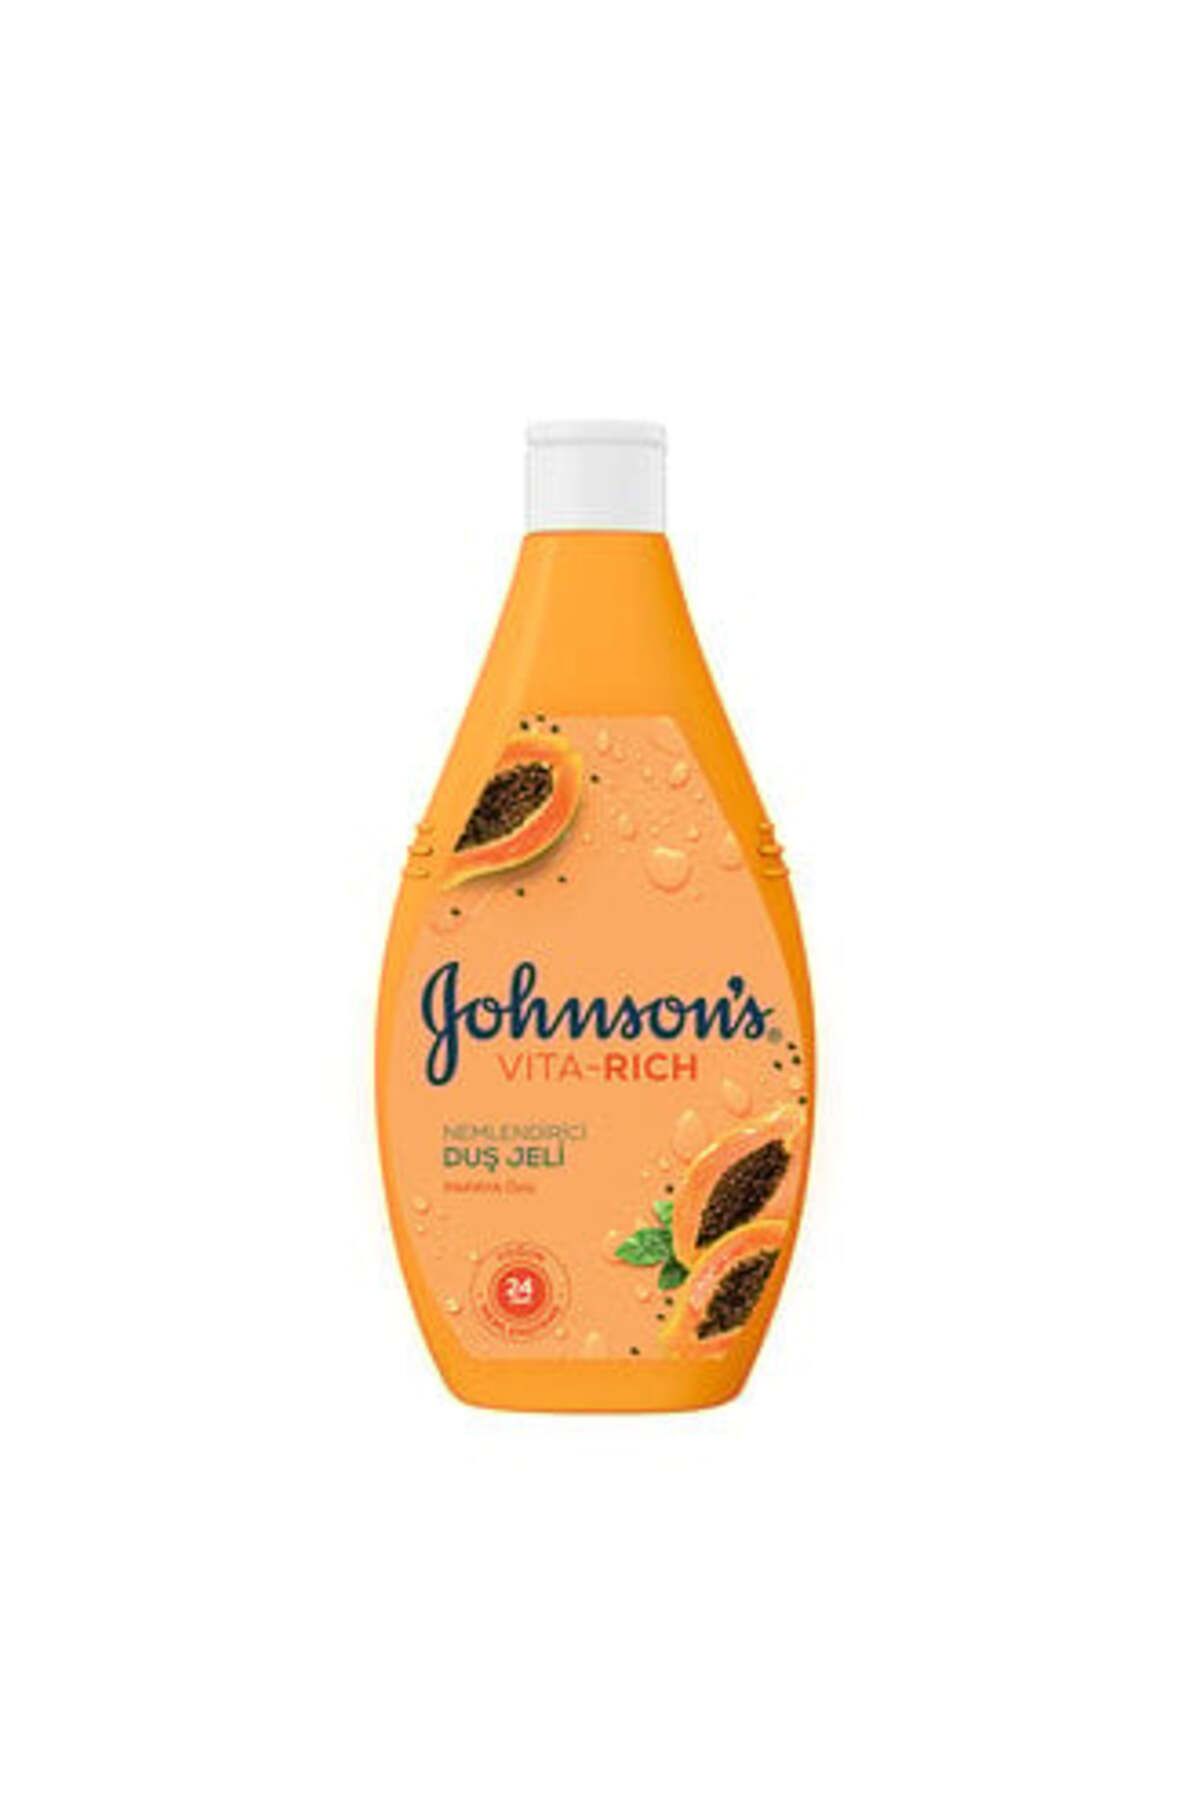 Johnson's Vıta-rıch Papaya Özlü Nemlendirici Duş Jeli 400Ml ( 1 ADET )